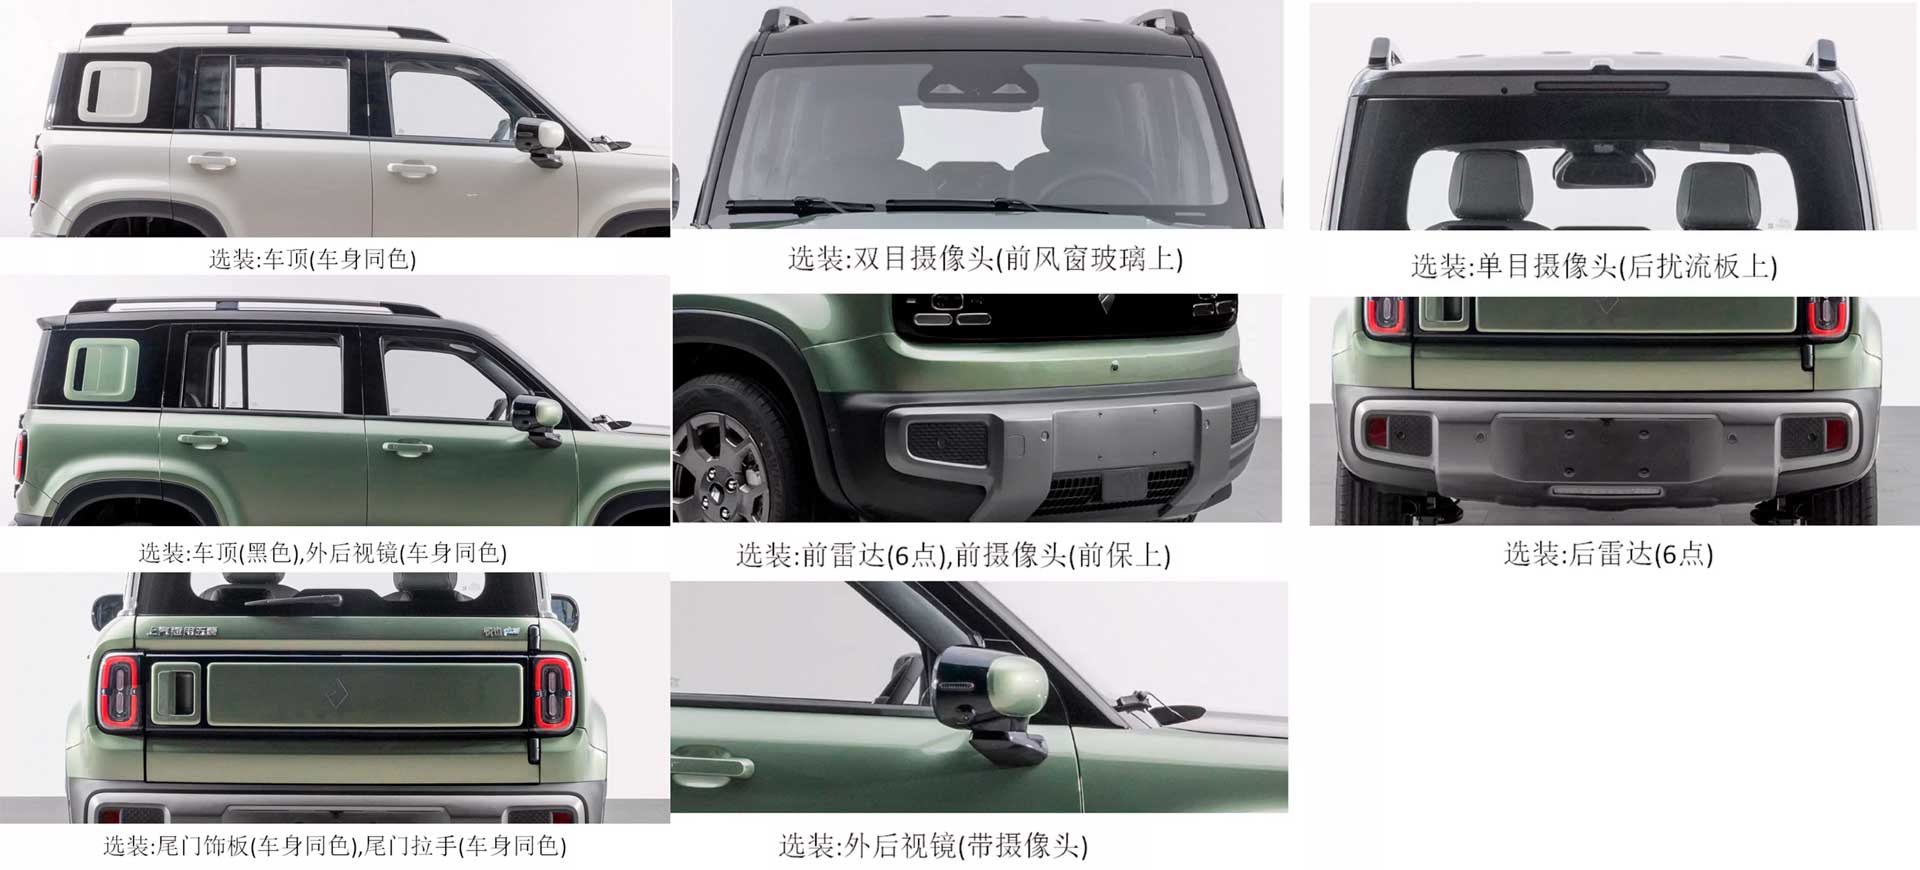 Электромобиль Baojun Yep Plus от GM увеличивается до пятидверки